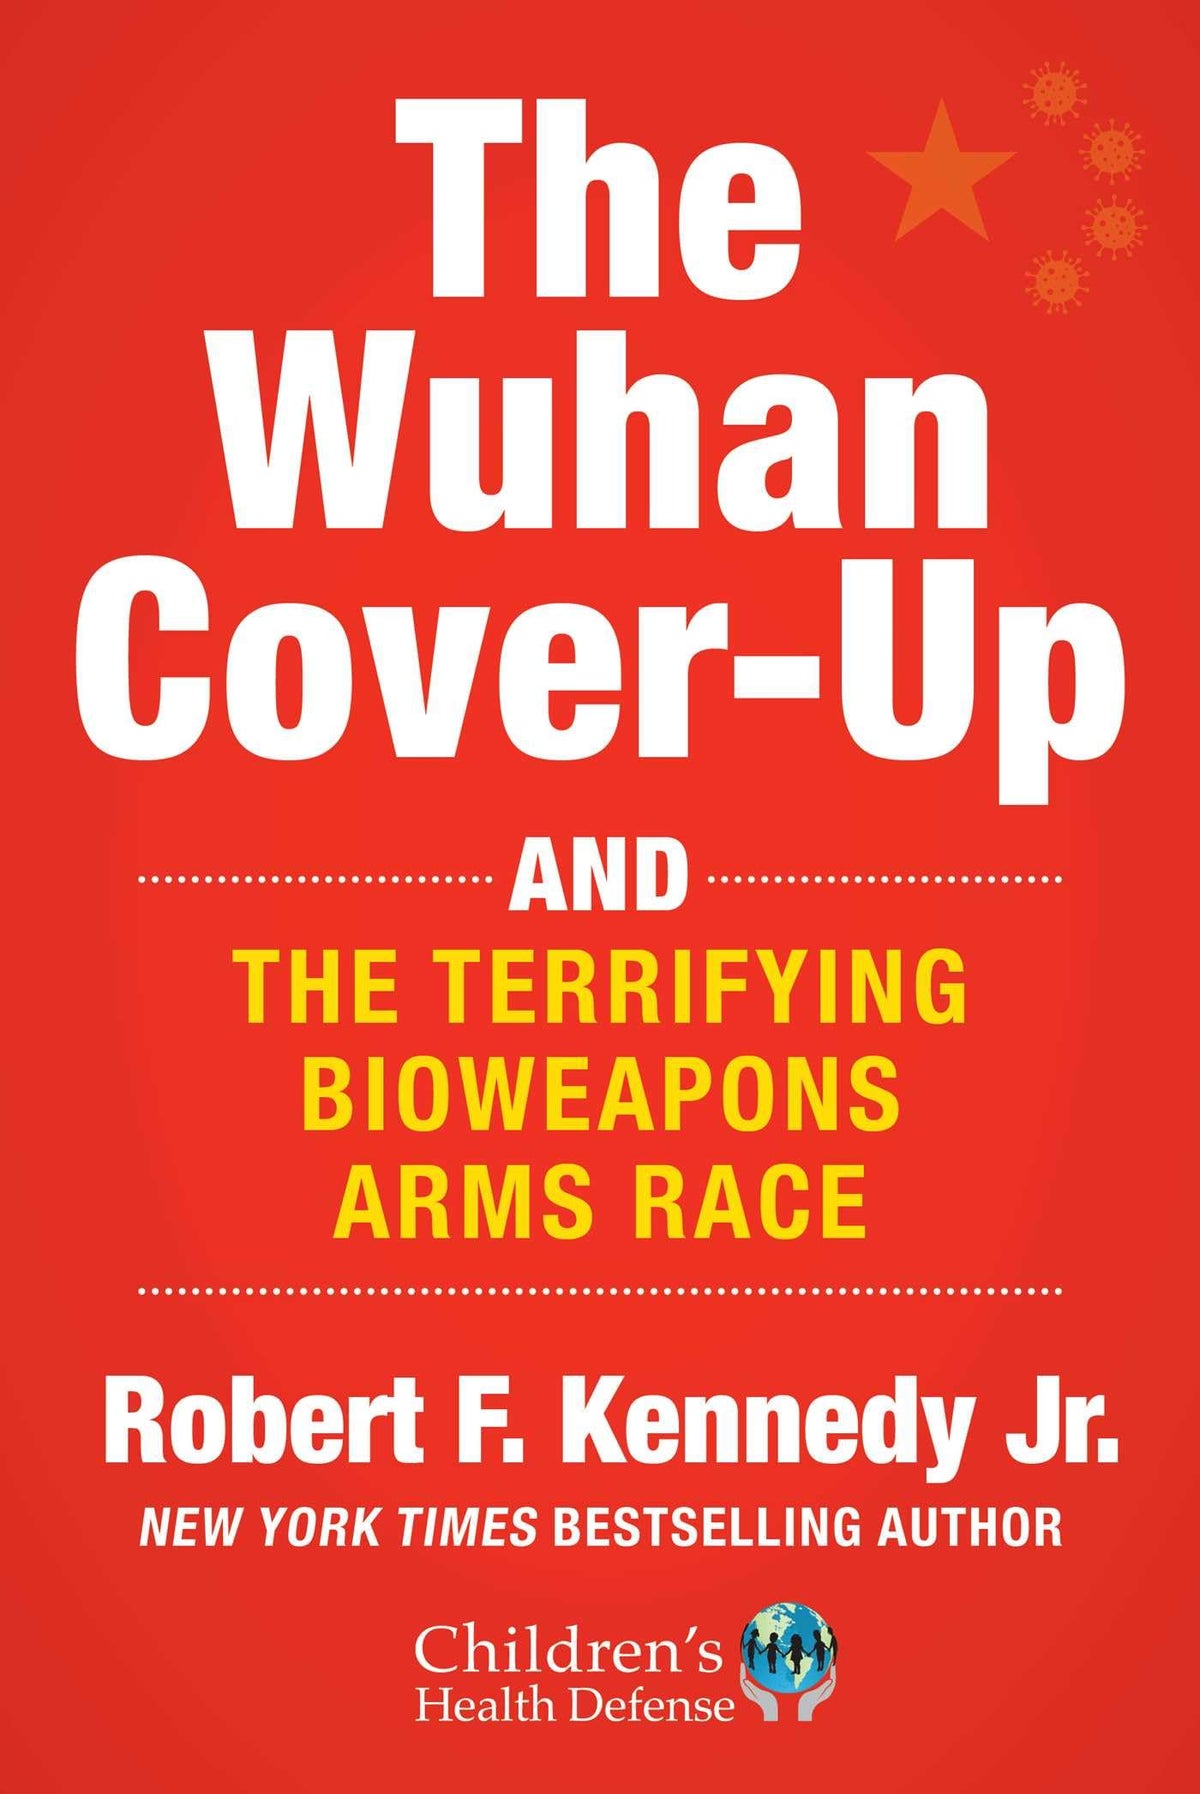 The Wuhan Cover-Up: And the Terrifying Bioweapons Arms Race (ChildrenÃƒÂ¢Ã¢â€šÂ¬Ã¢â€žÂ¢s Health Defense)